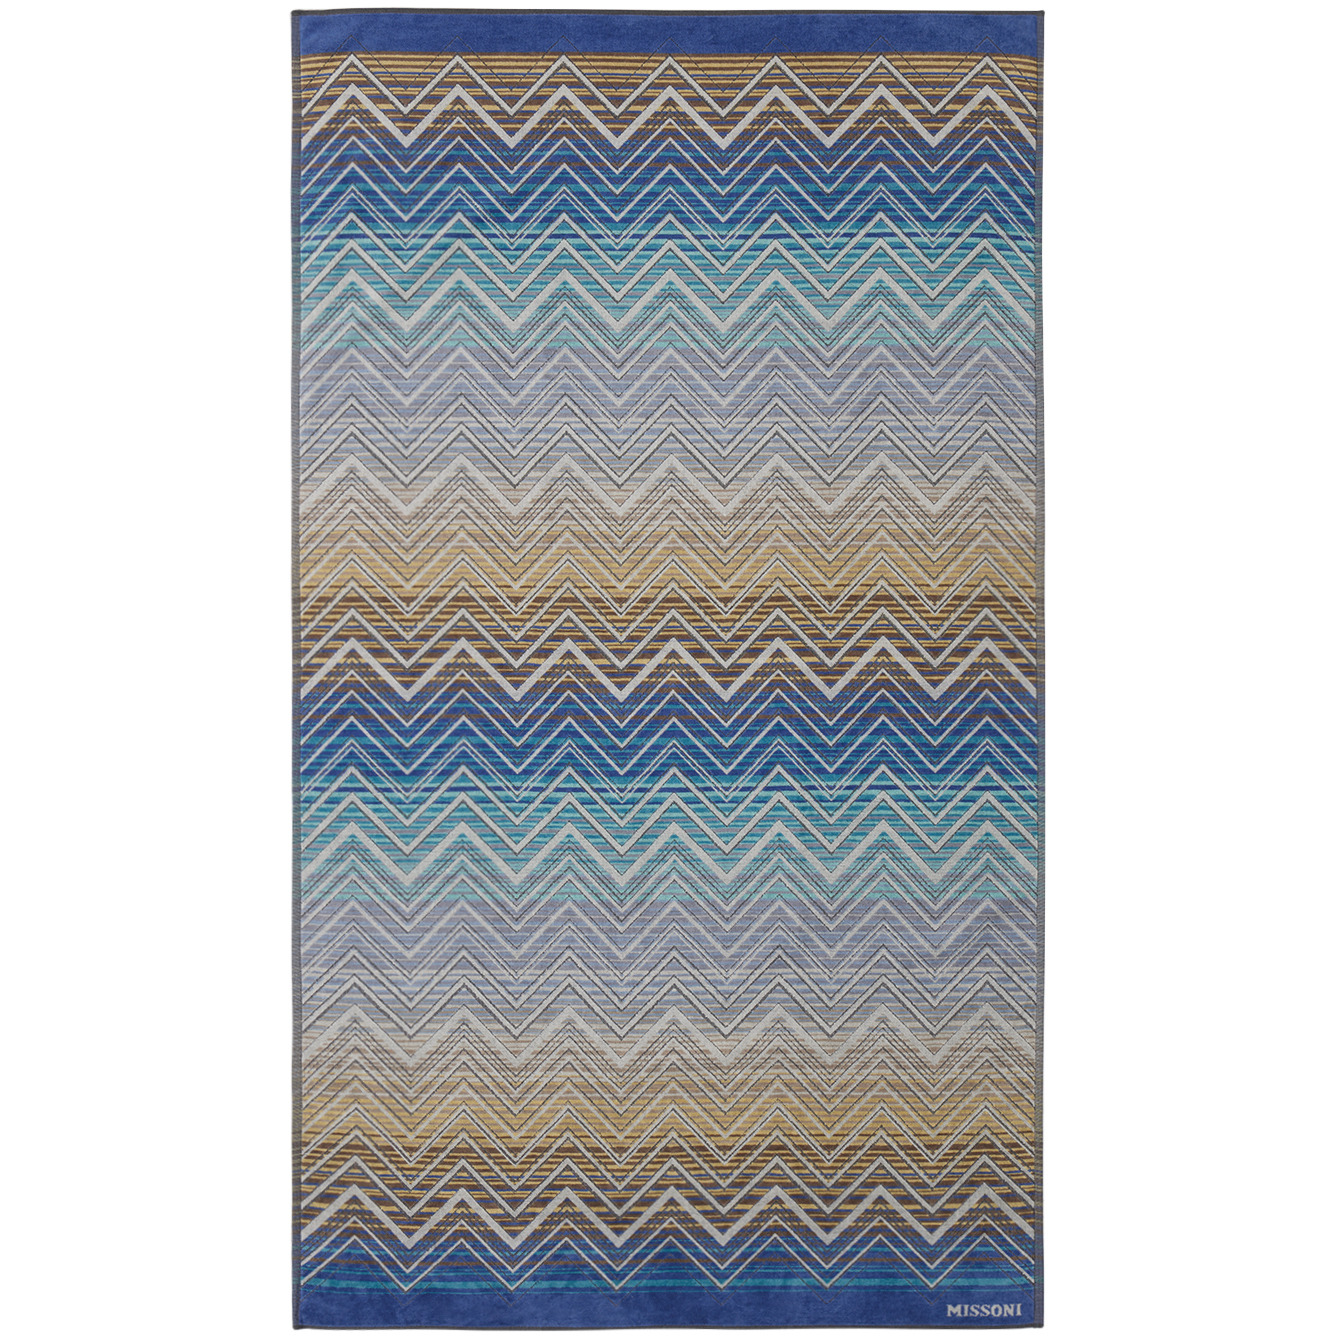 Missoni Blue & Beige Tolomeo Beach Towel - image 1